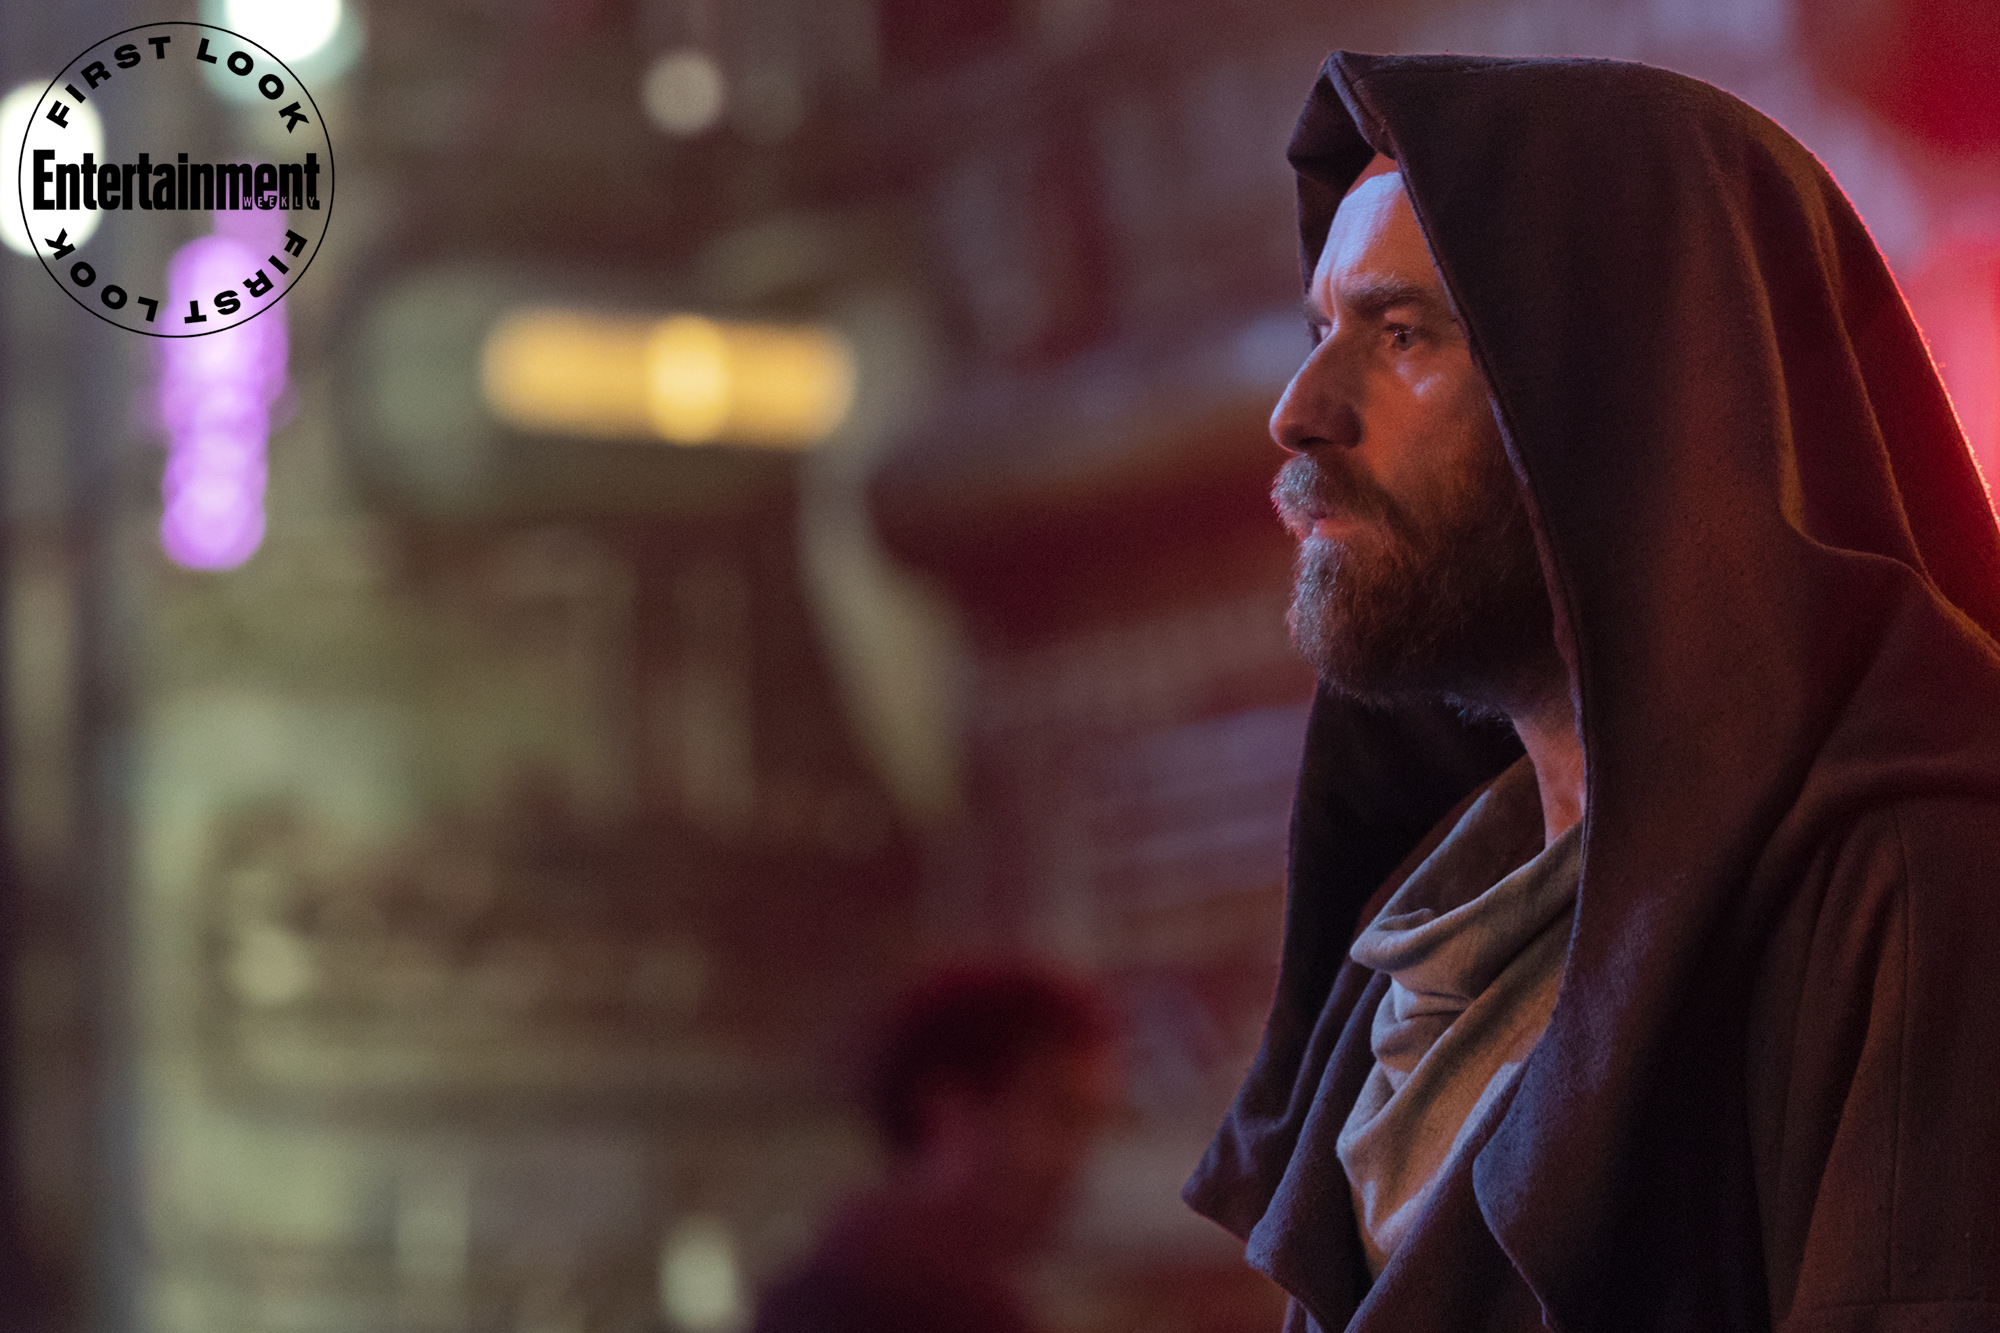 Primeras imágenes de Ewan McGregor en su regreso al clásico personaje de “Star Wars” para “Obi-Wan Kenobi”, la nueva serie de Disney+ - Infobae